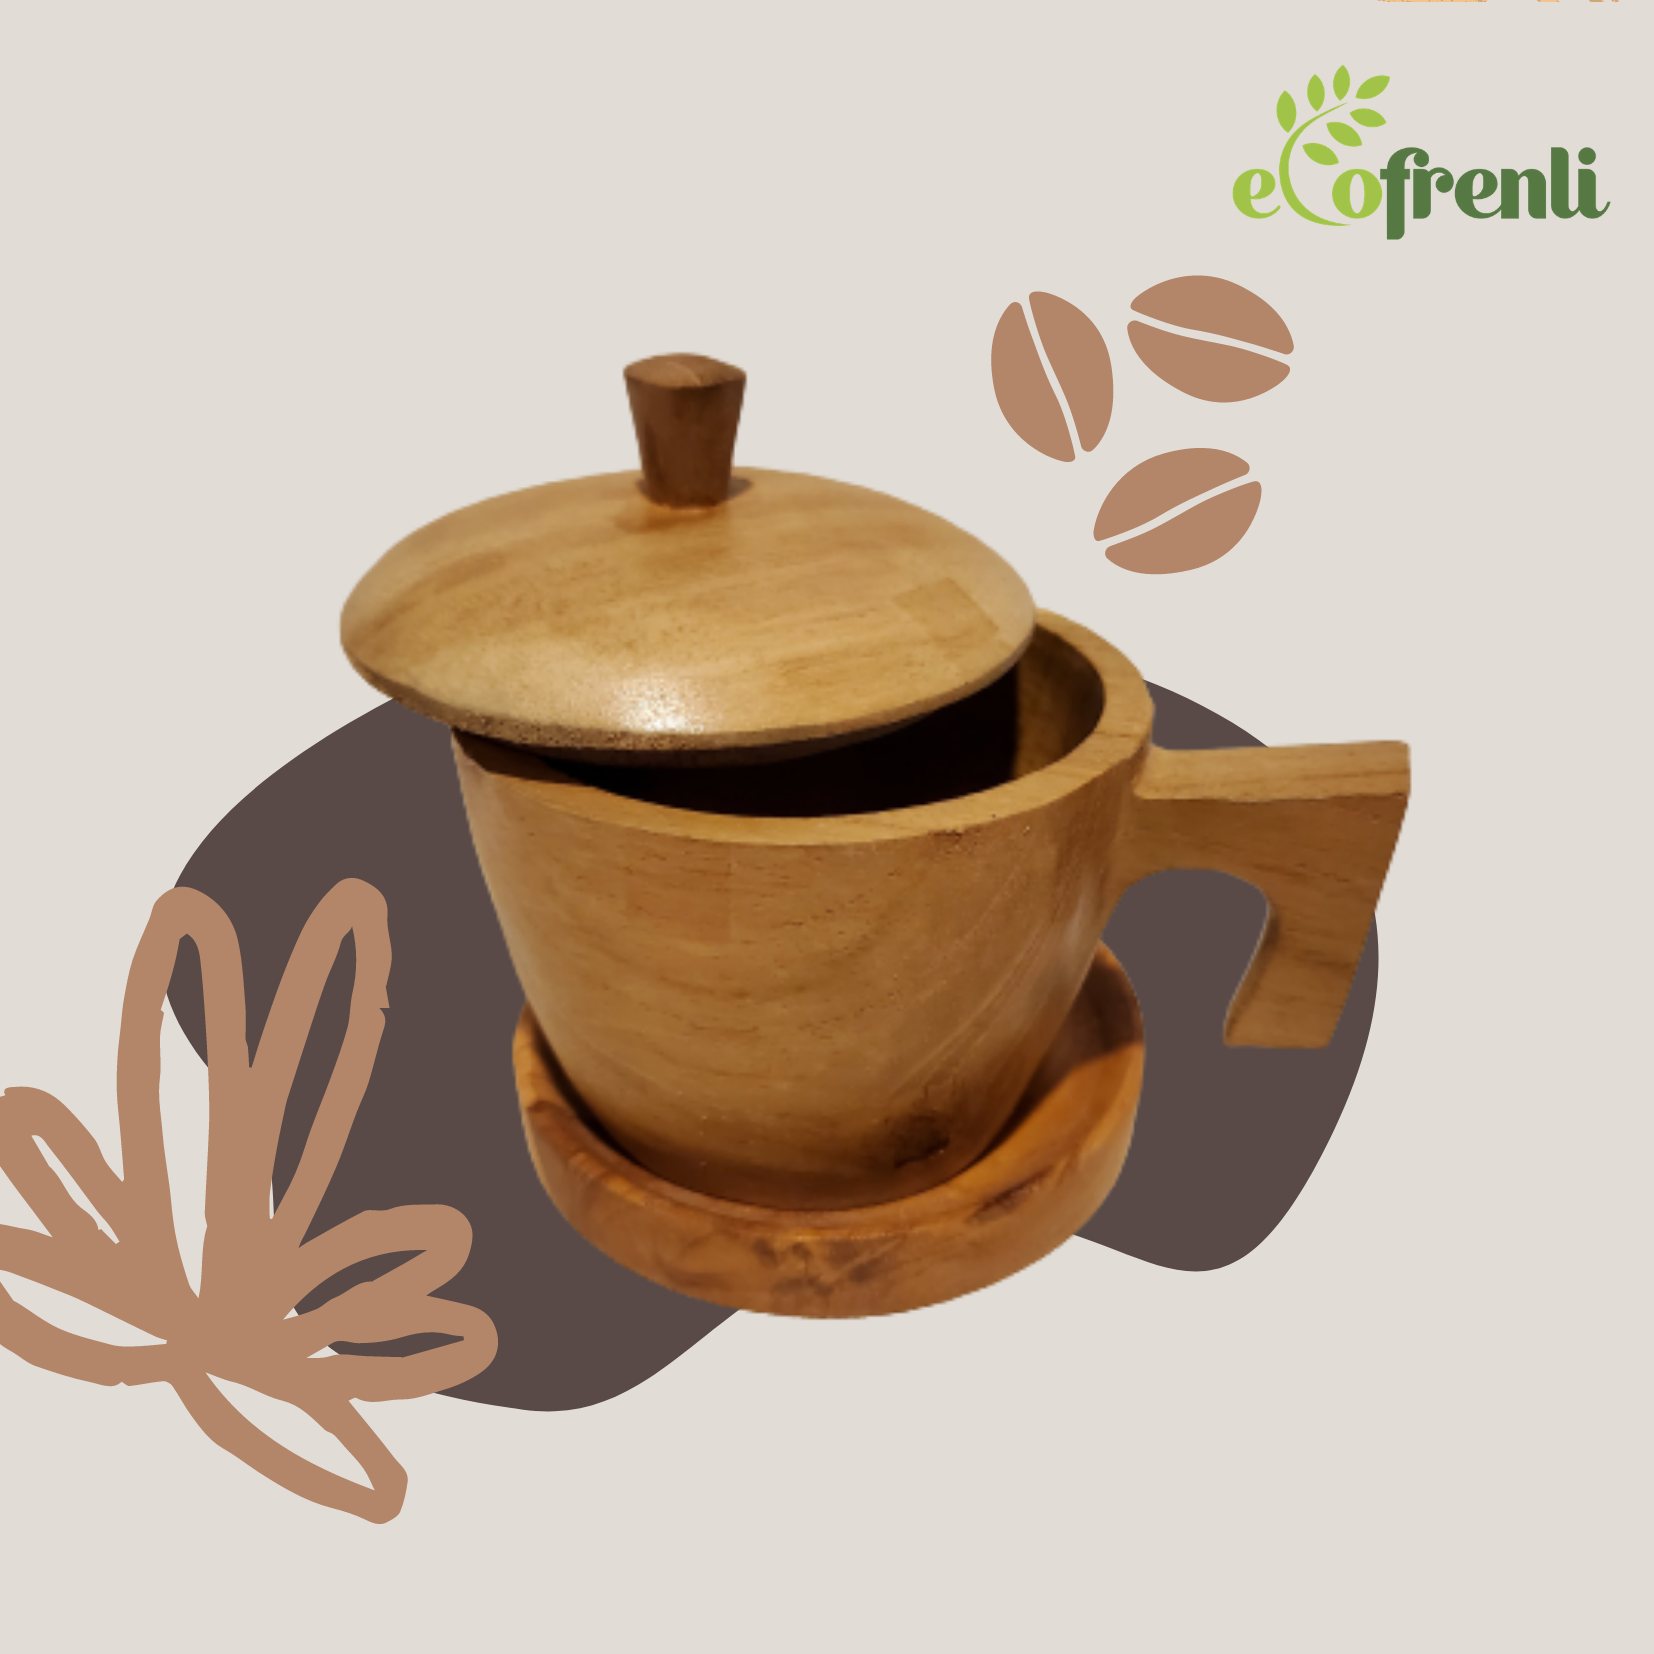 ‘I’m Handmade’ Coffee/Tea Cup Saucer + Cover Set - Ecofrenli.com